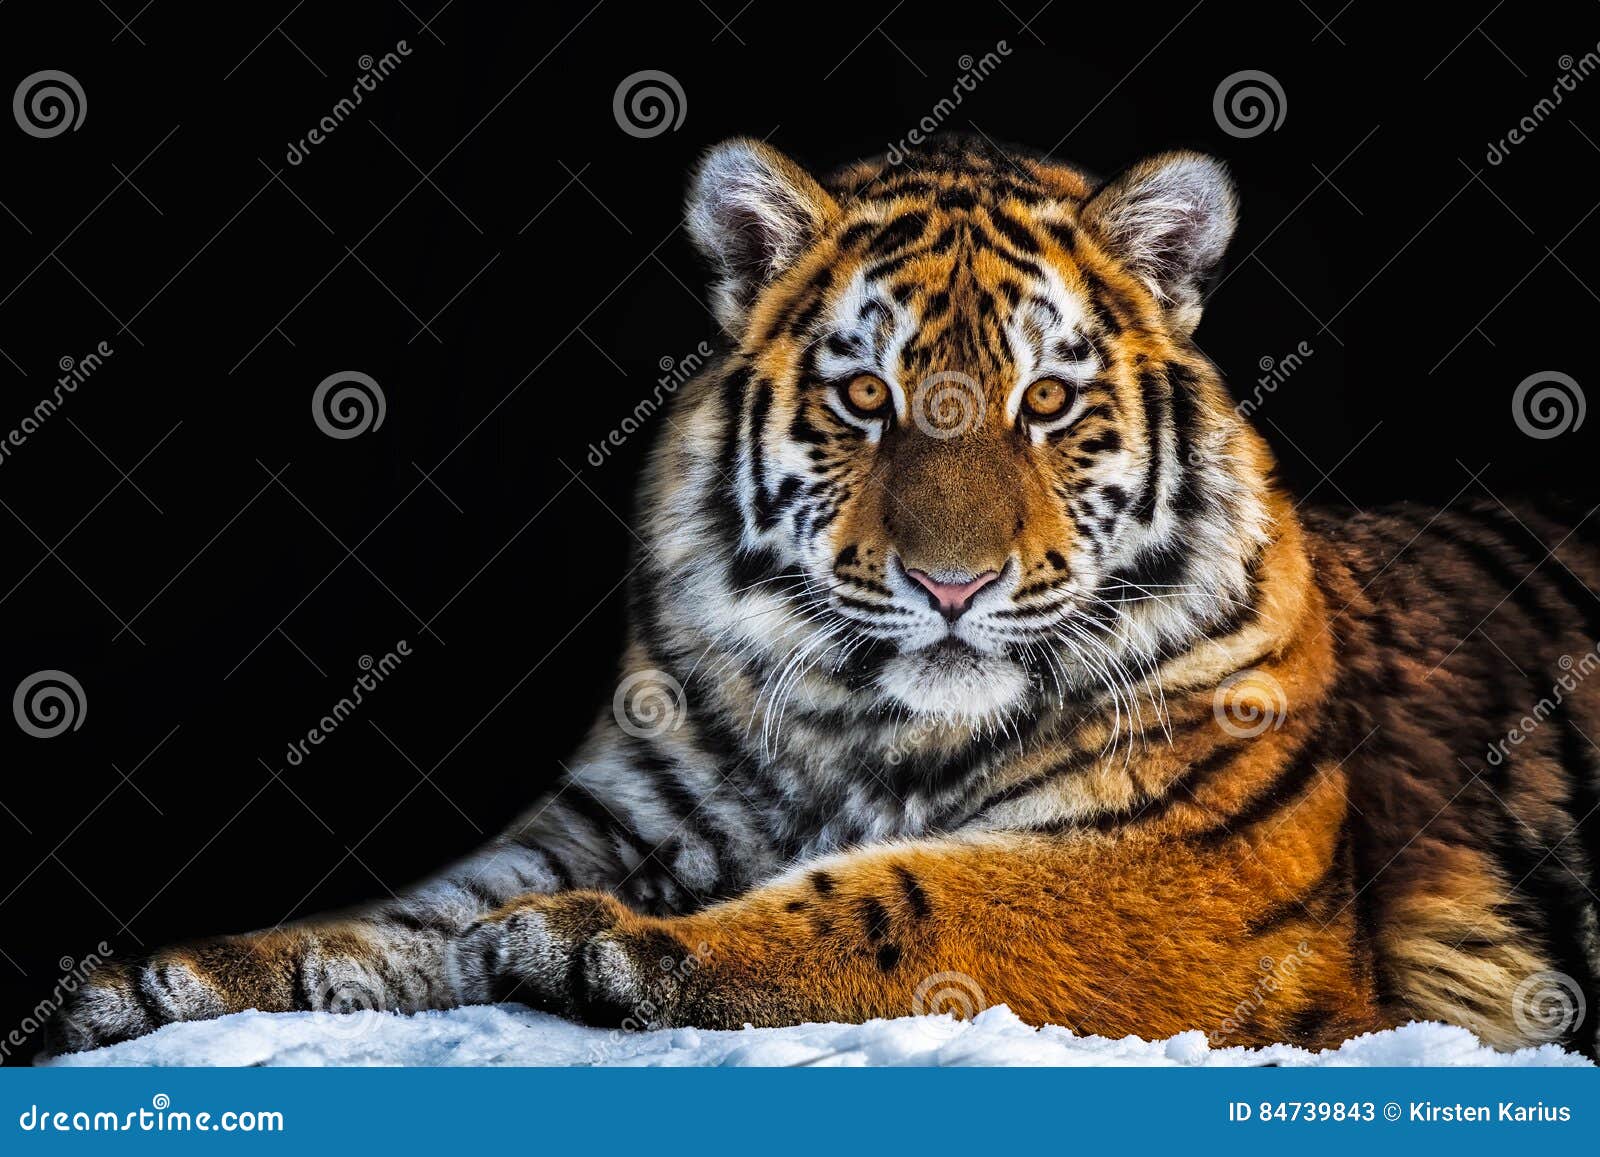 tiger - panthera tigris